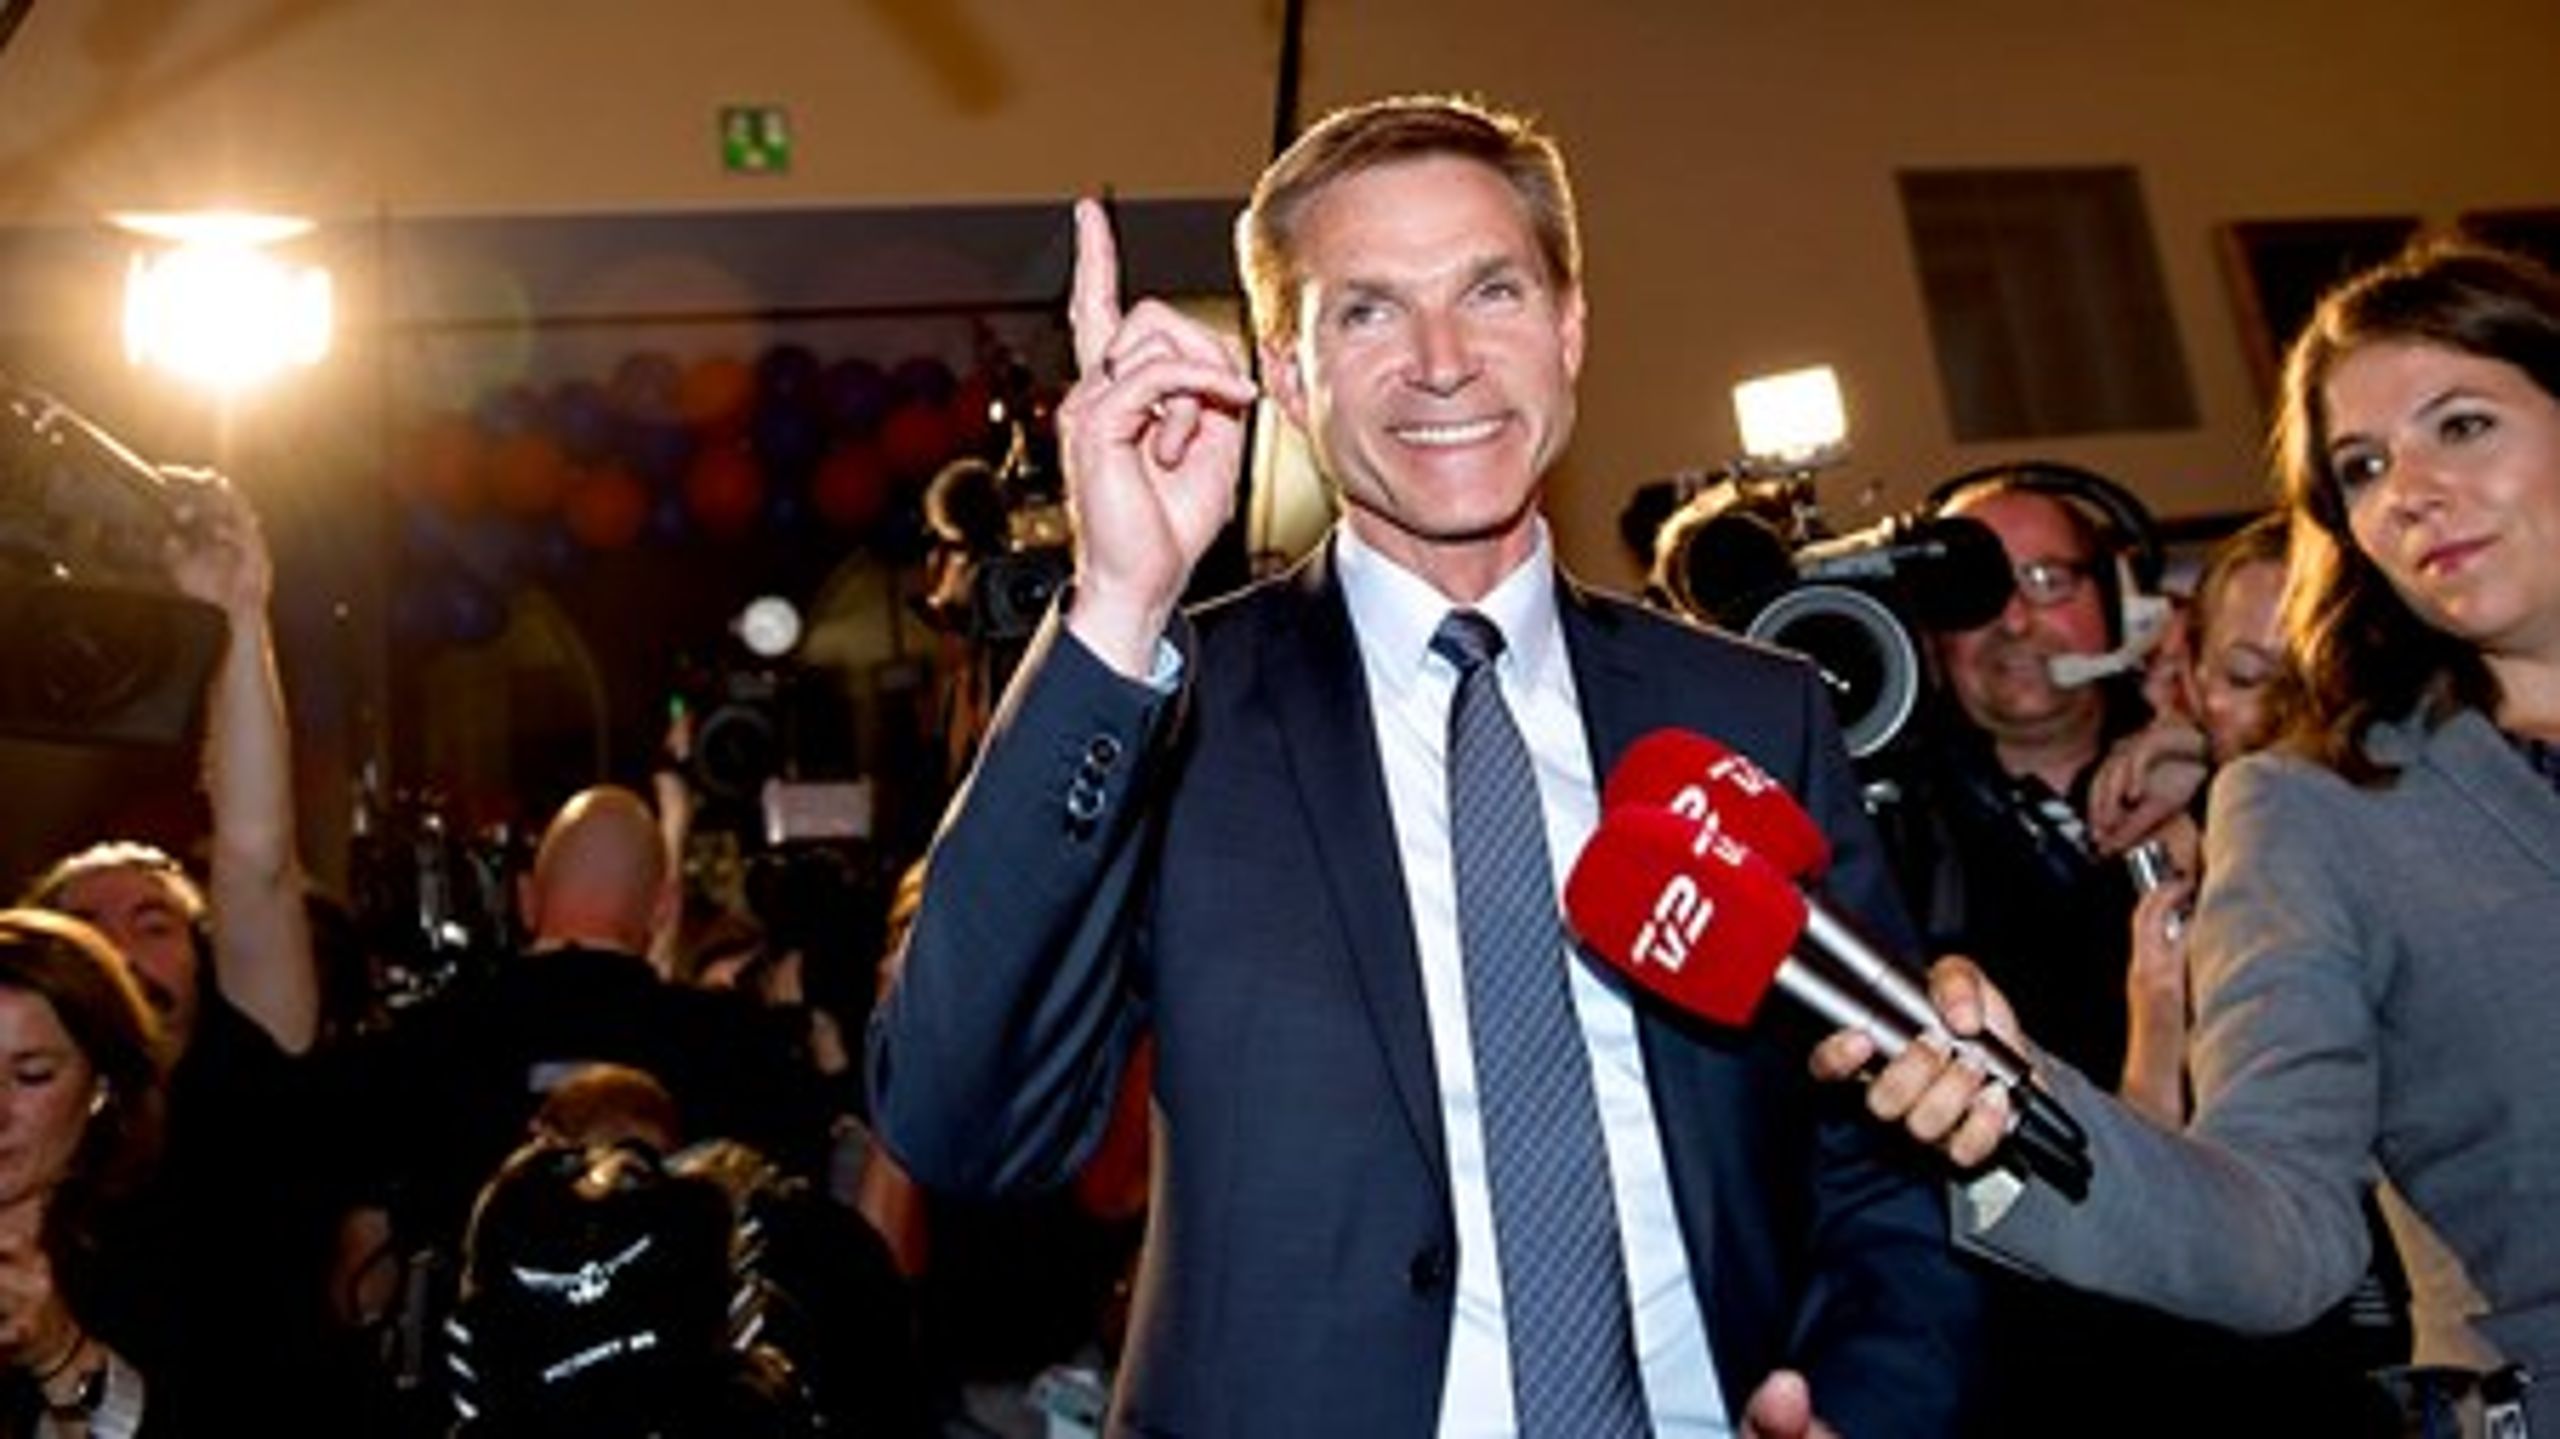 Kristian Thulesen Dahl og Dansk Folkeparti leverer med valget&nbsp;15 nye politikere til Folketinget.